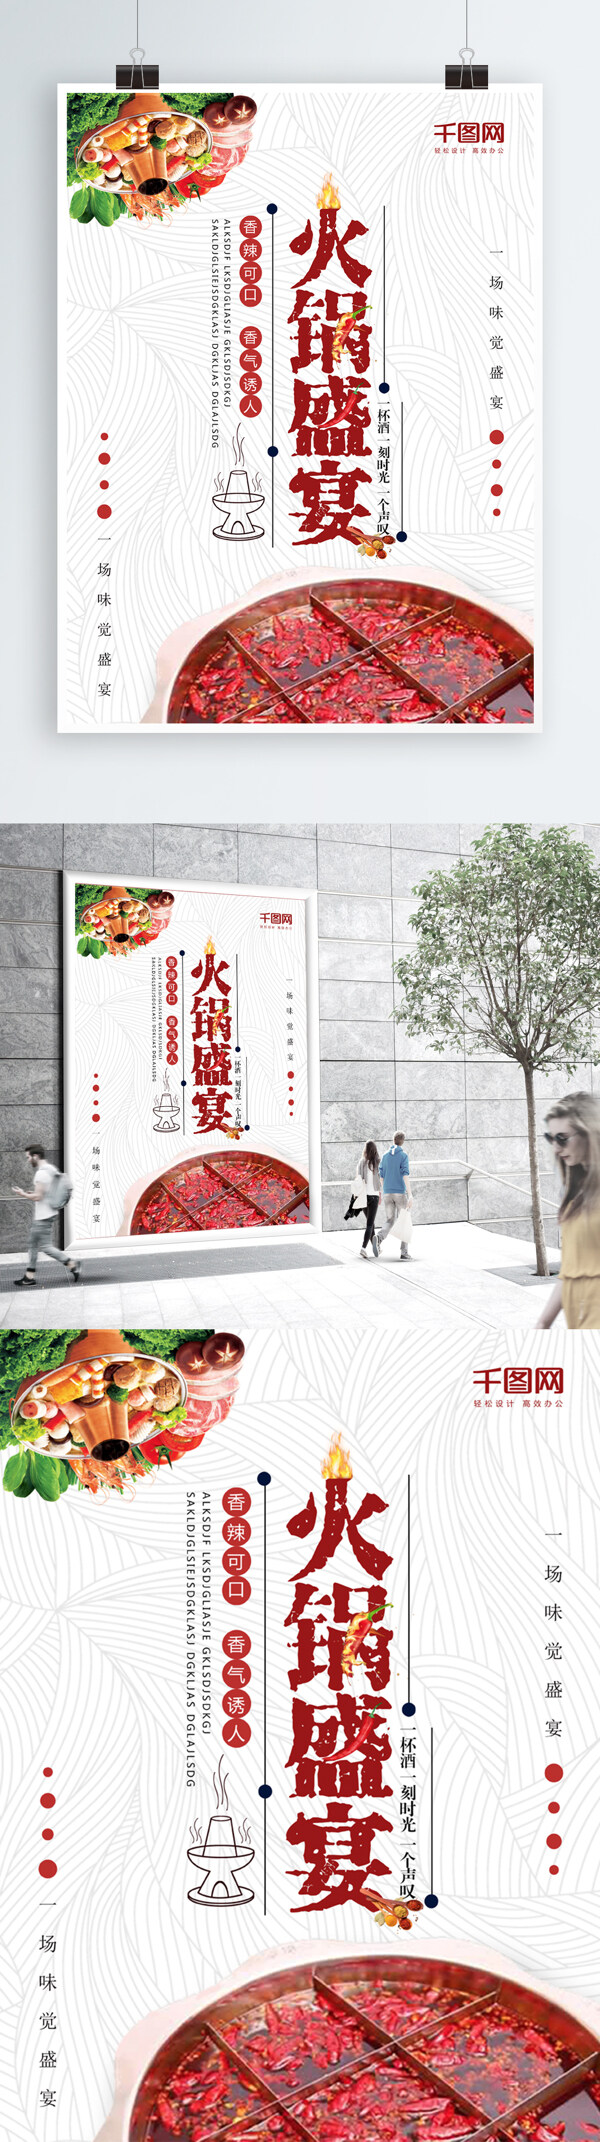 美食海报宣传简约大气火锅盛宴海报设计